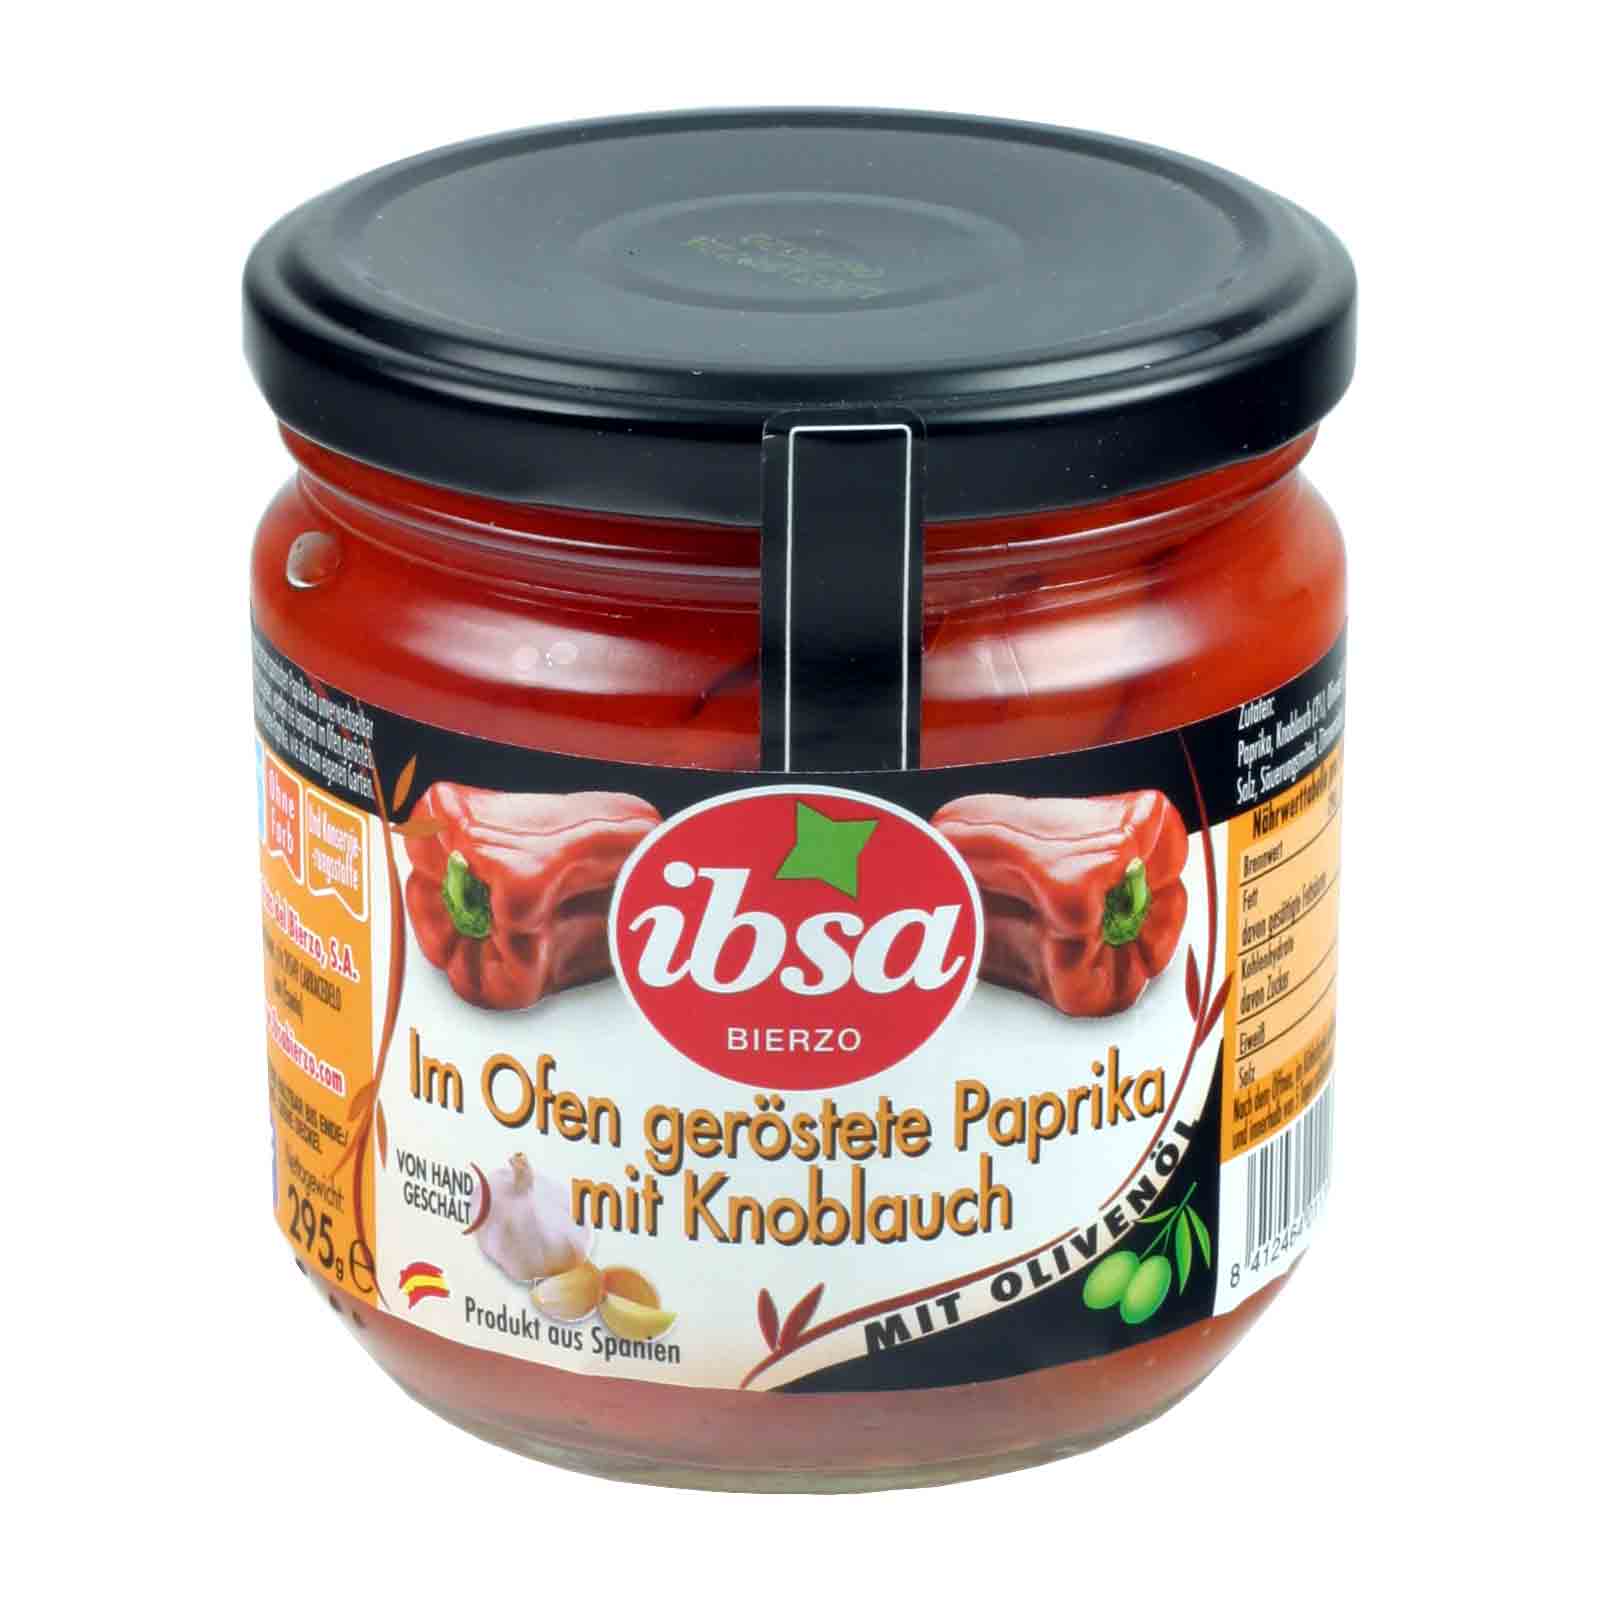 Im Ofen geröstete Paprika mit Knoblauch - 295g | Ungarische Feinkost ...